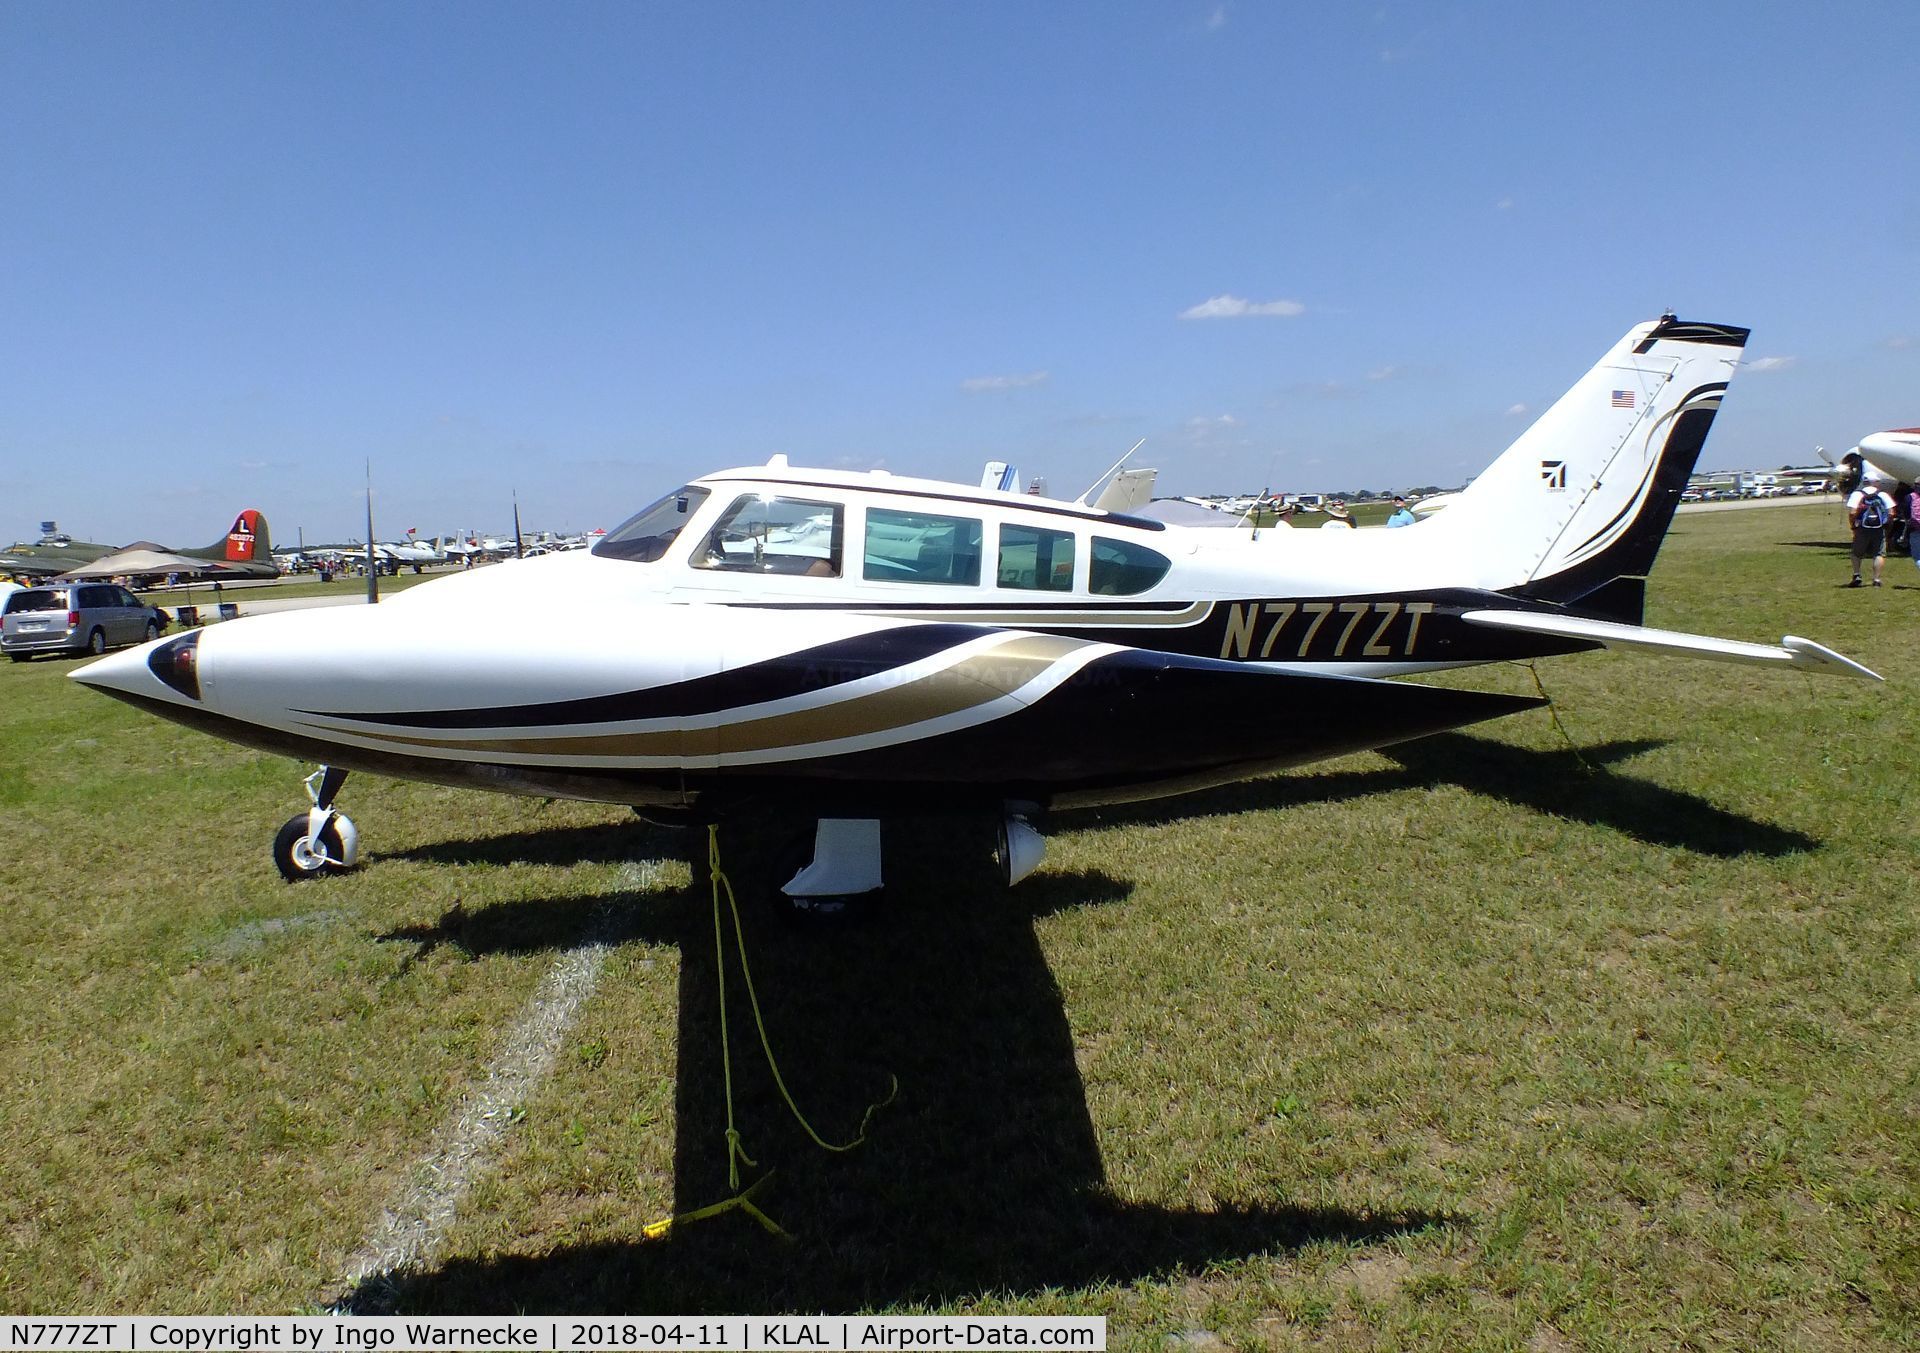 N777ZT, 1966 Cessna 320E Executive Skyknight C/N 320E0033, Cessna 320E Executive Skyknight at 2018 Sun 'n Fun, Lakeland FL